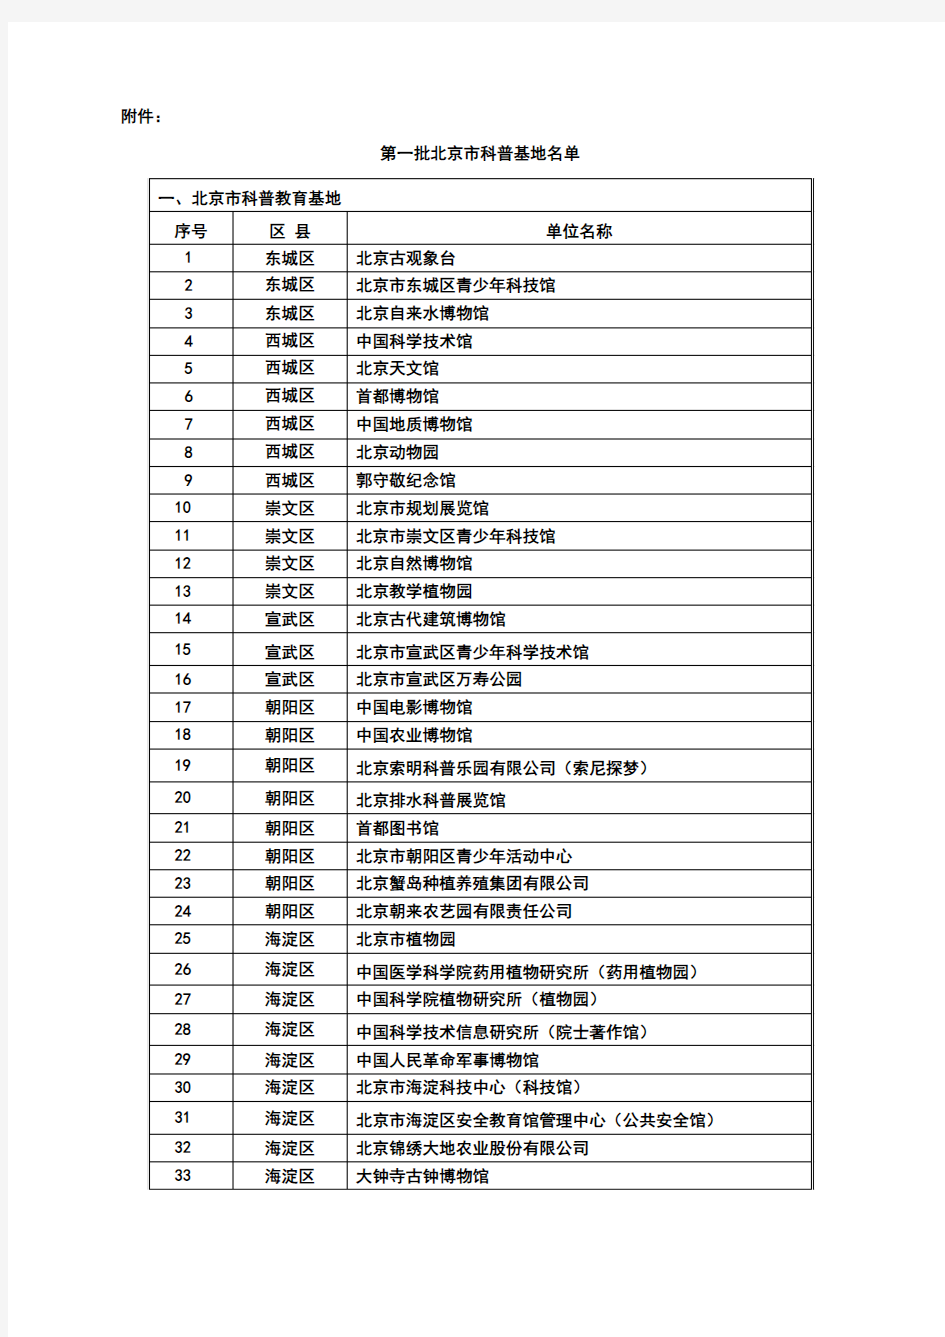 2007年北京市科普基地名单